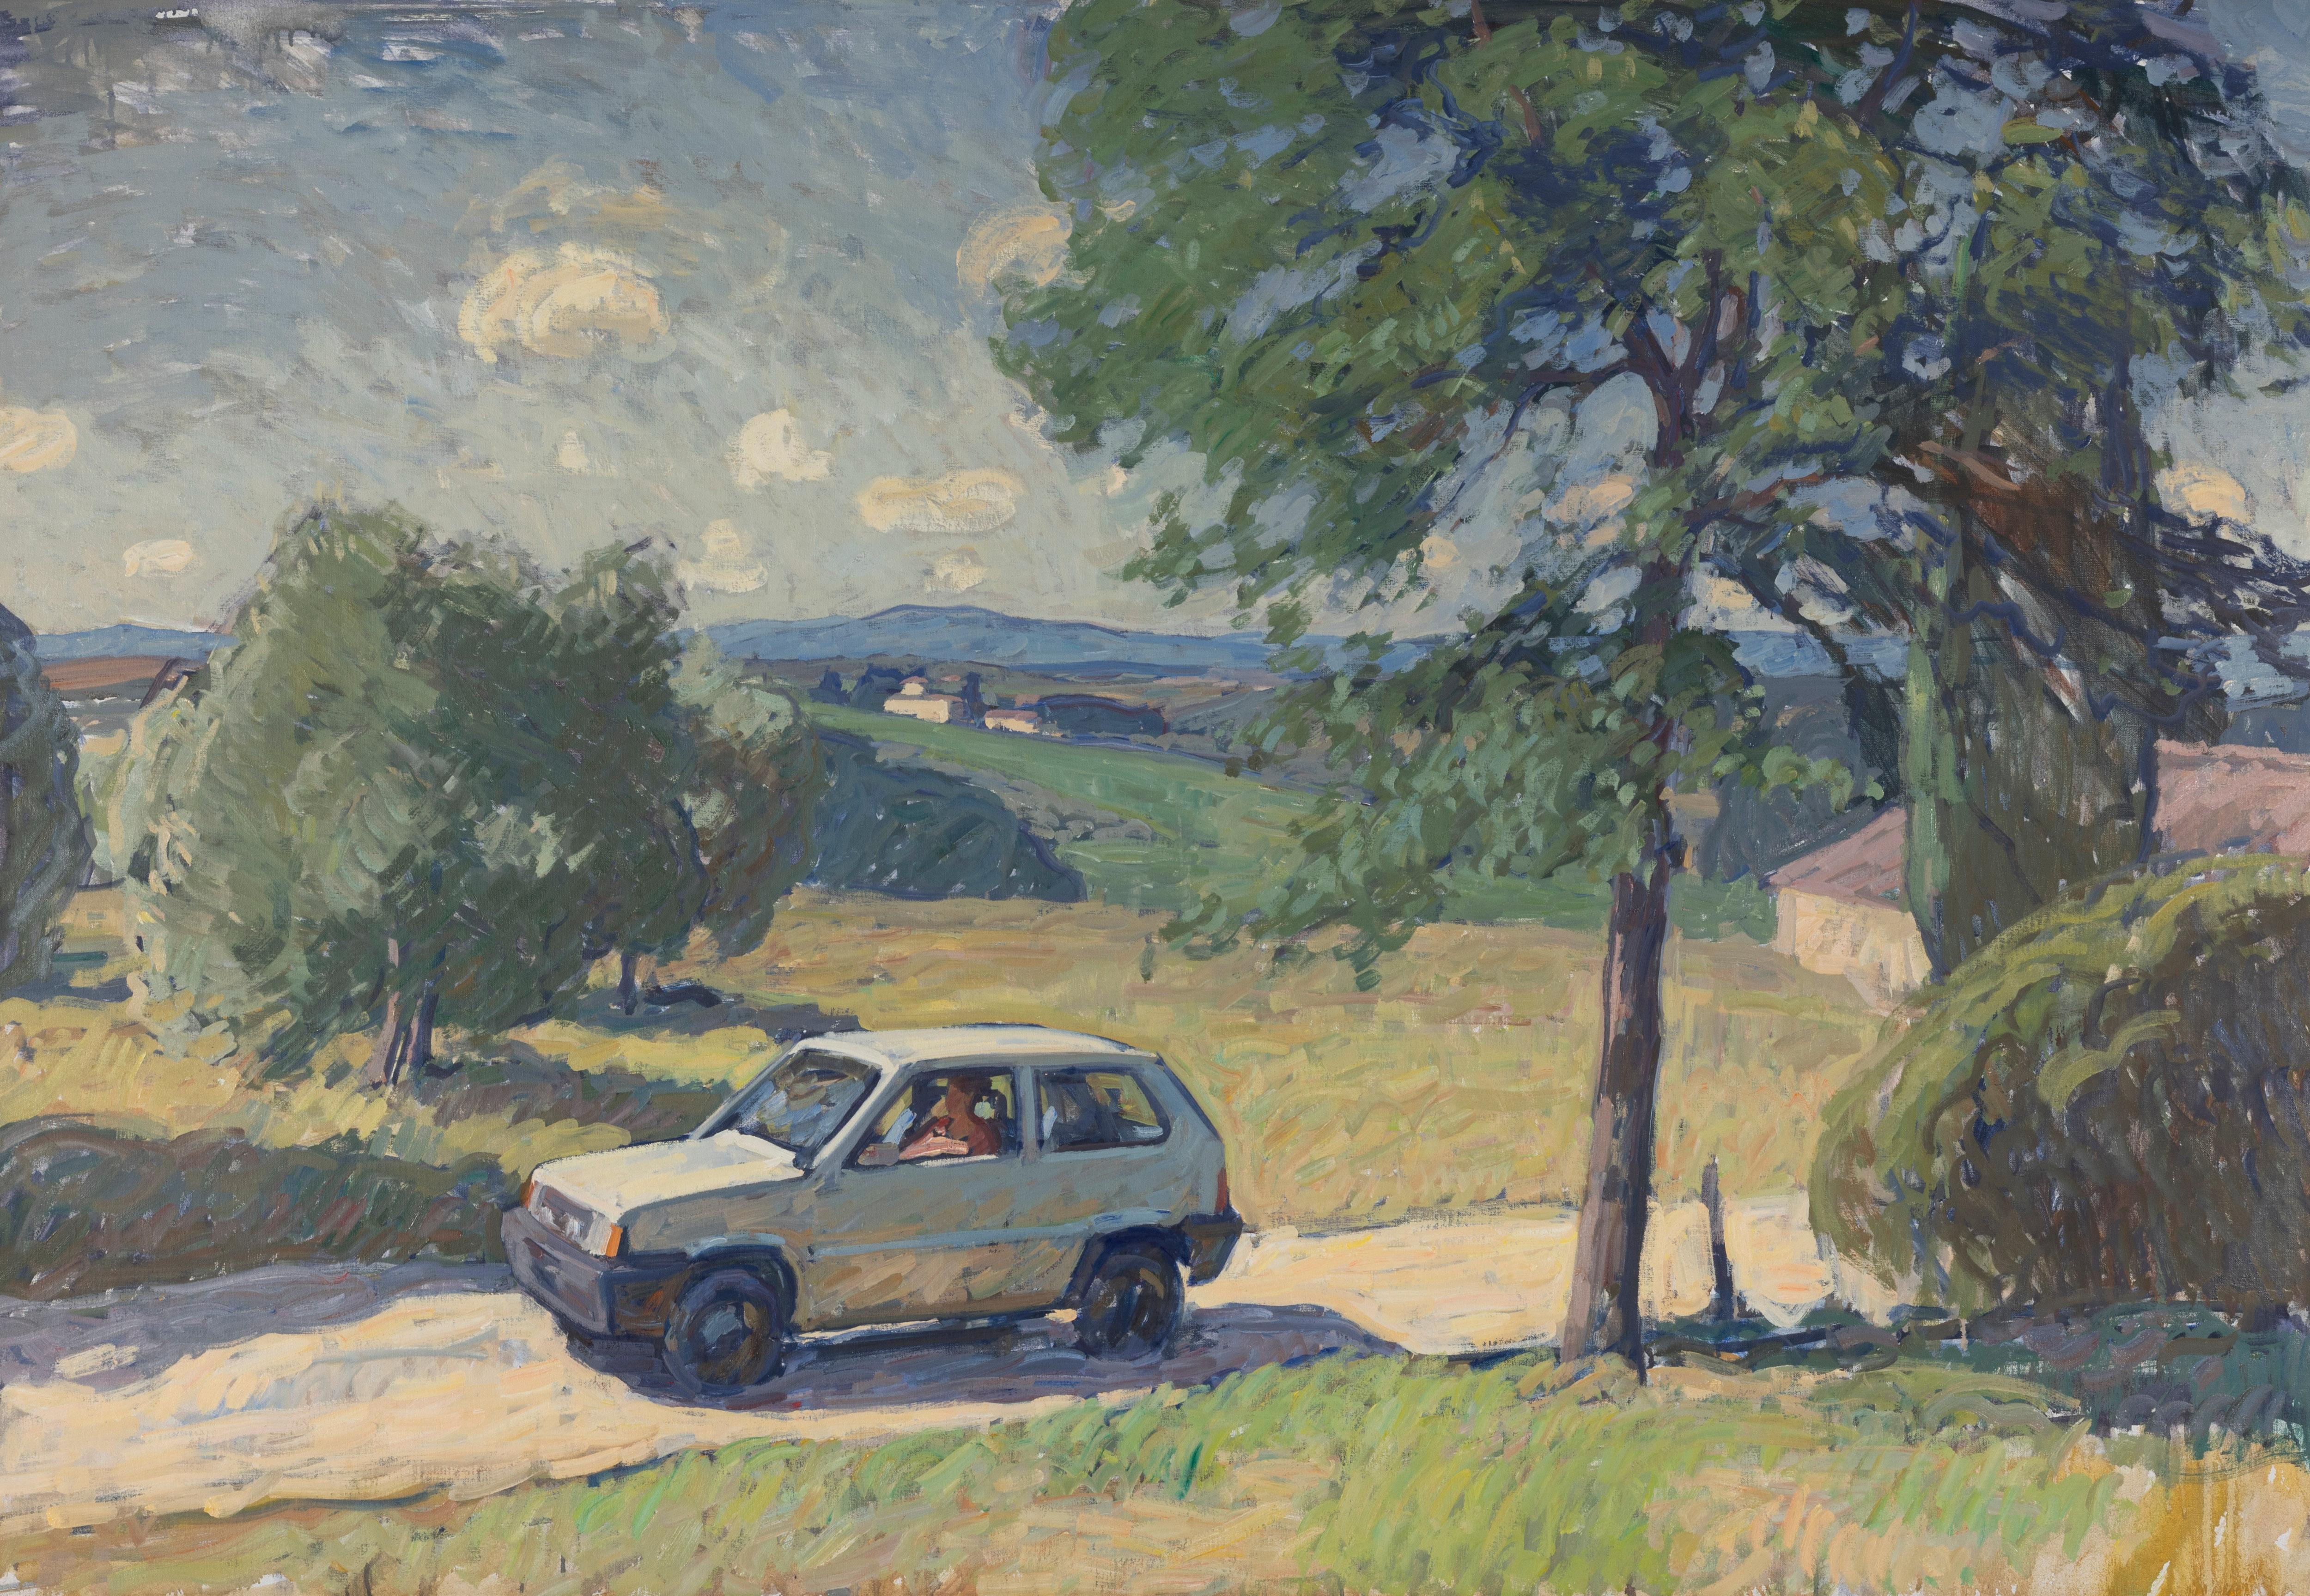 Landscape Painting Ben Fenske - "Summer" Paysage néo-impressionniste d'une Fiat roulant dans la campagne toscane.